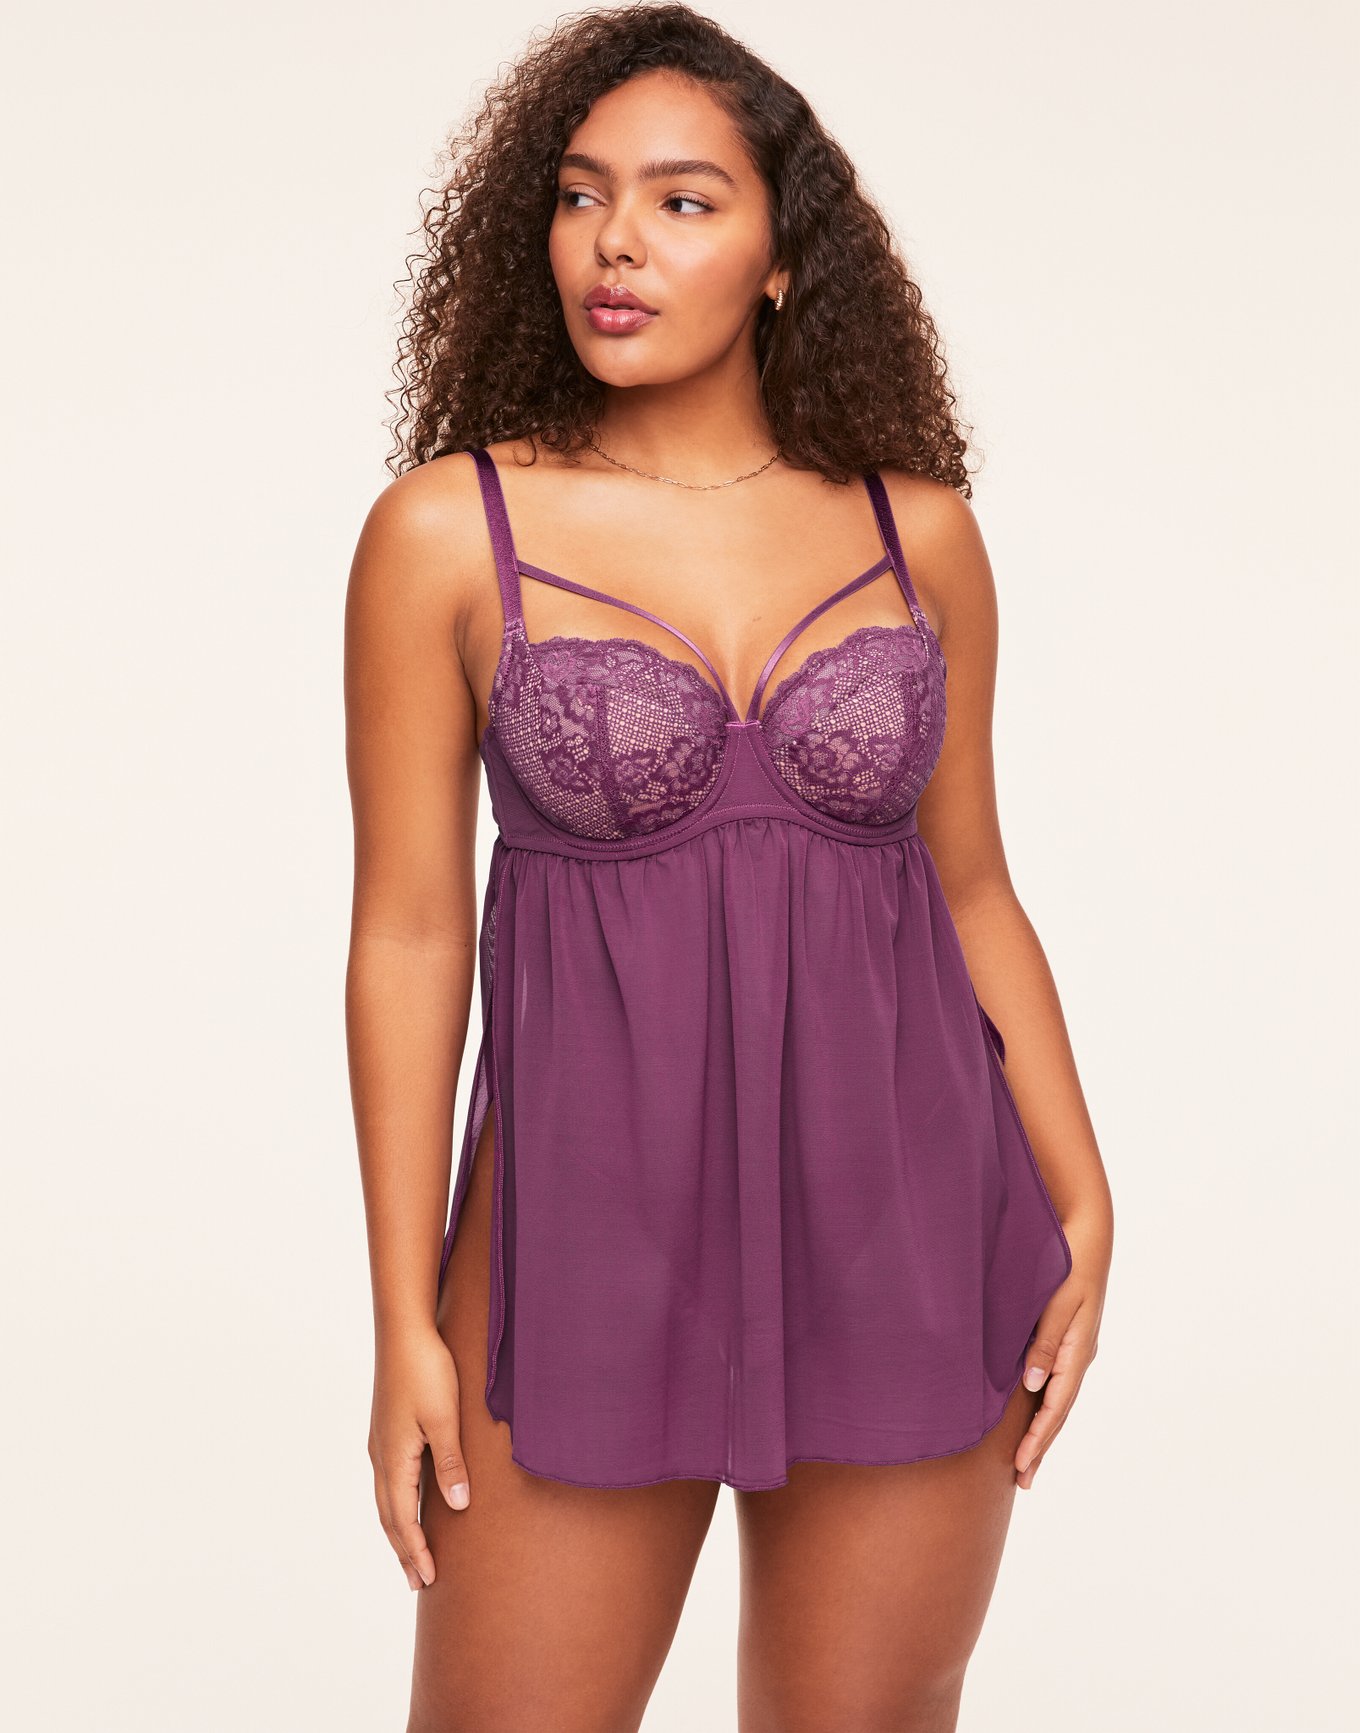 Babydolls Violet Purple Plus Size Sexy Lingerie (Women's)